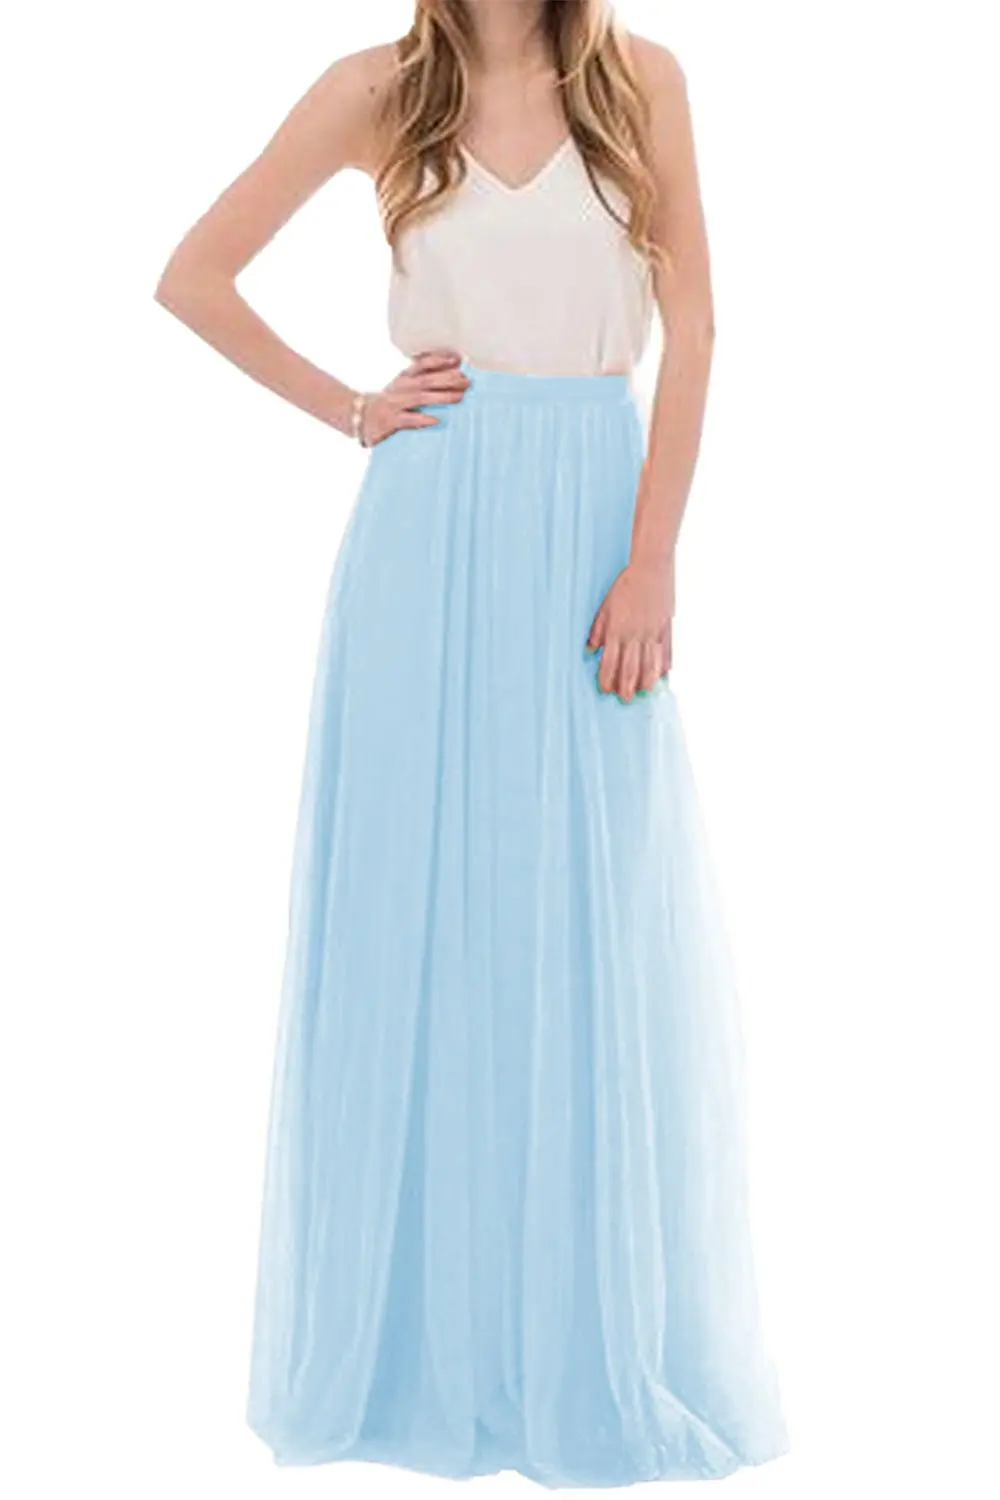 Женская летняя фатиновая юбка, длинная юбка подружки невесты, румяные юбки для выпускного вечера/юбка макси для подружки невесты, вечерние платья Vestidos - Цвет: 777 Sky Blue